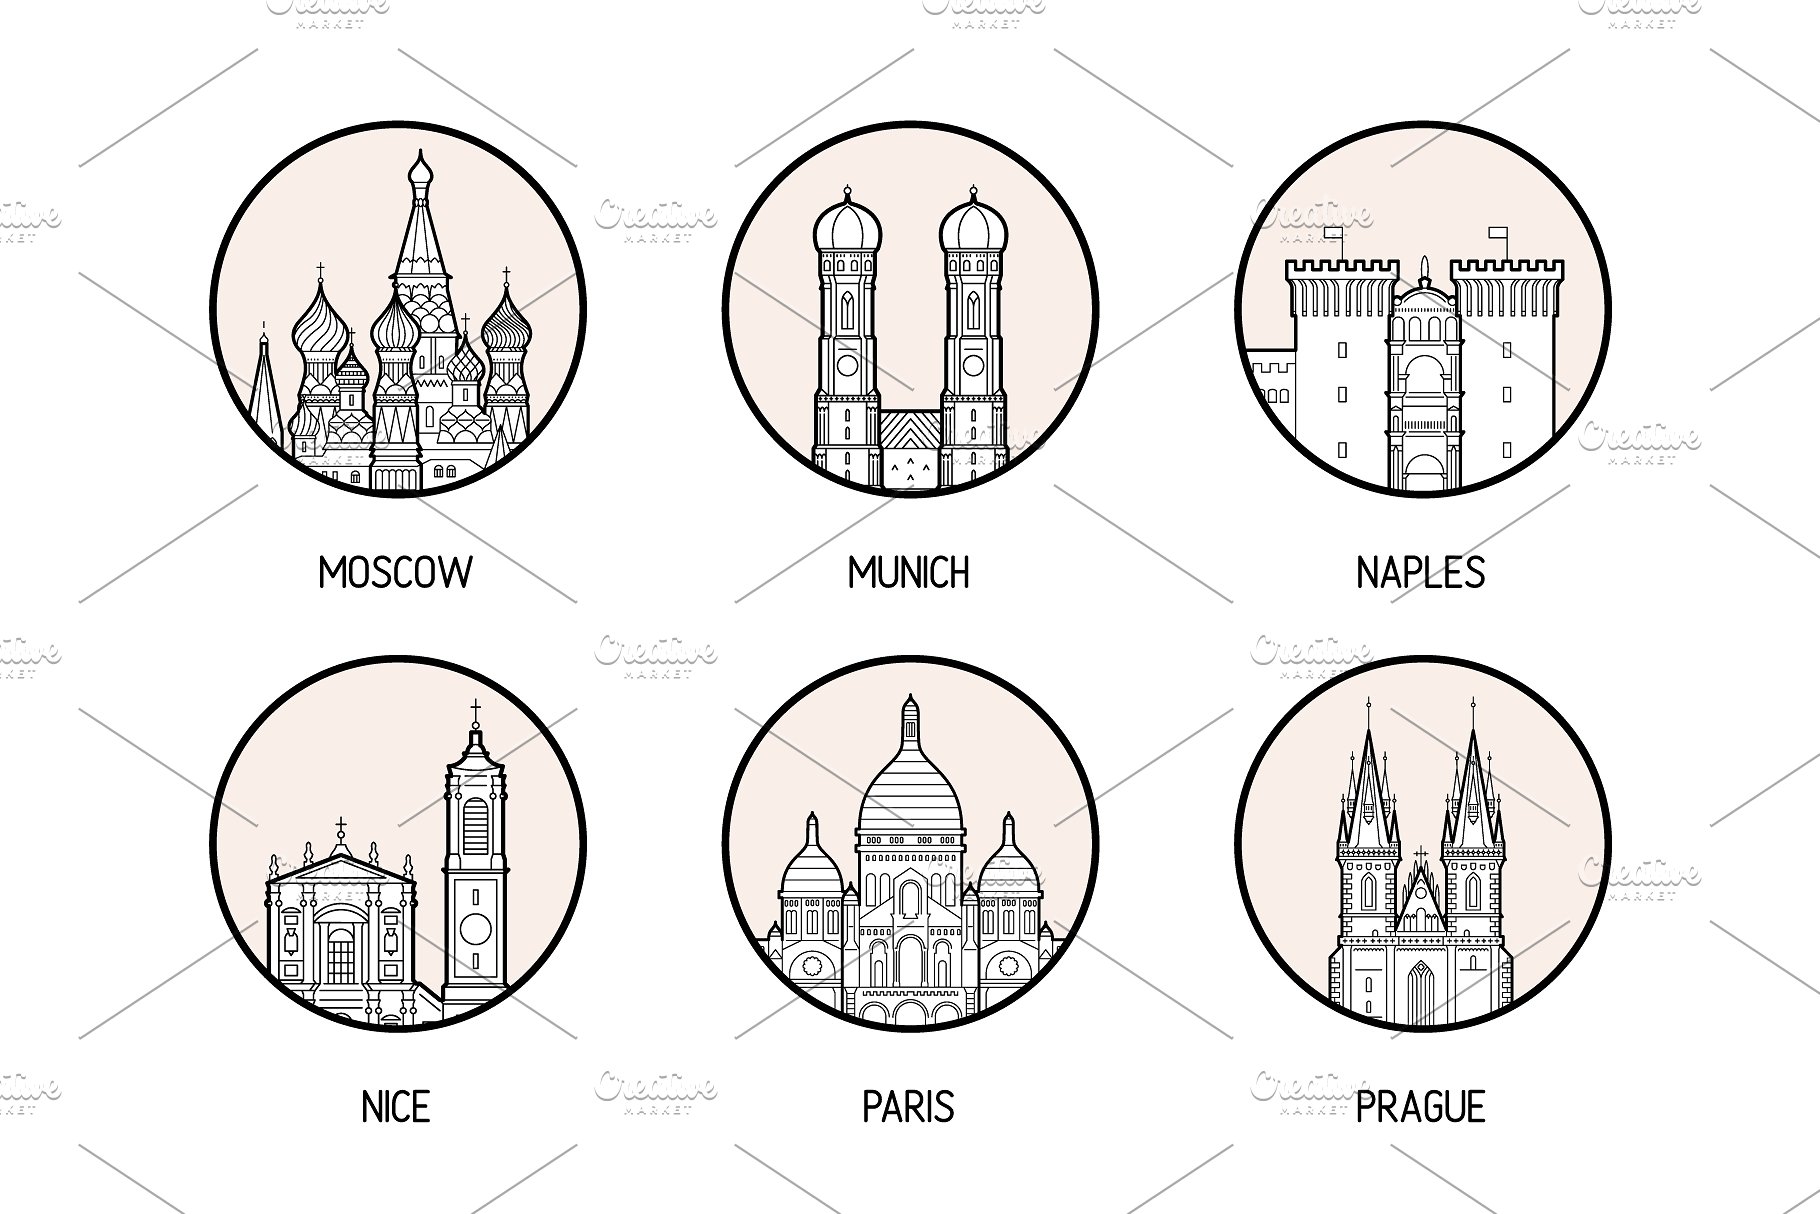 30个欧洲城市的徽章图标集合 Icons of 30 European cities插图(5)